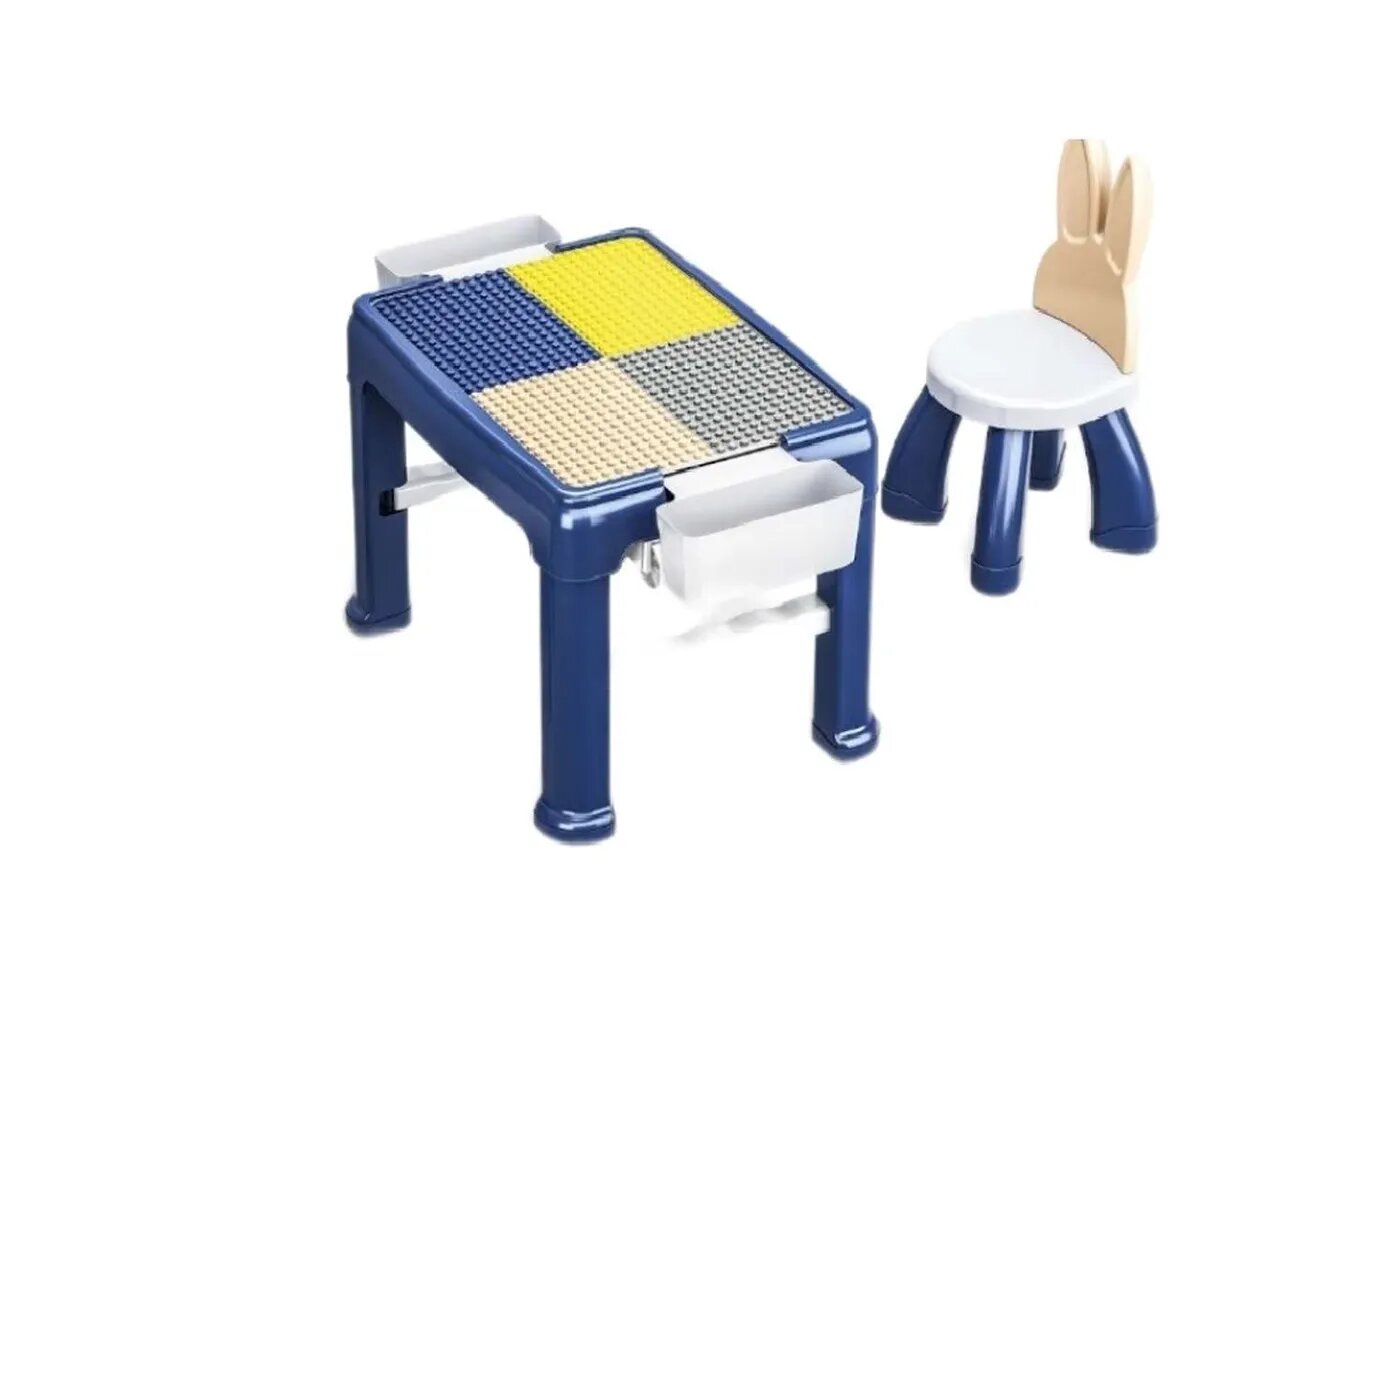 Игровой набор S+S для сборки конструктора стол и стул